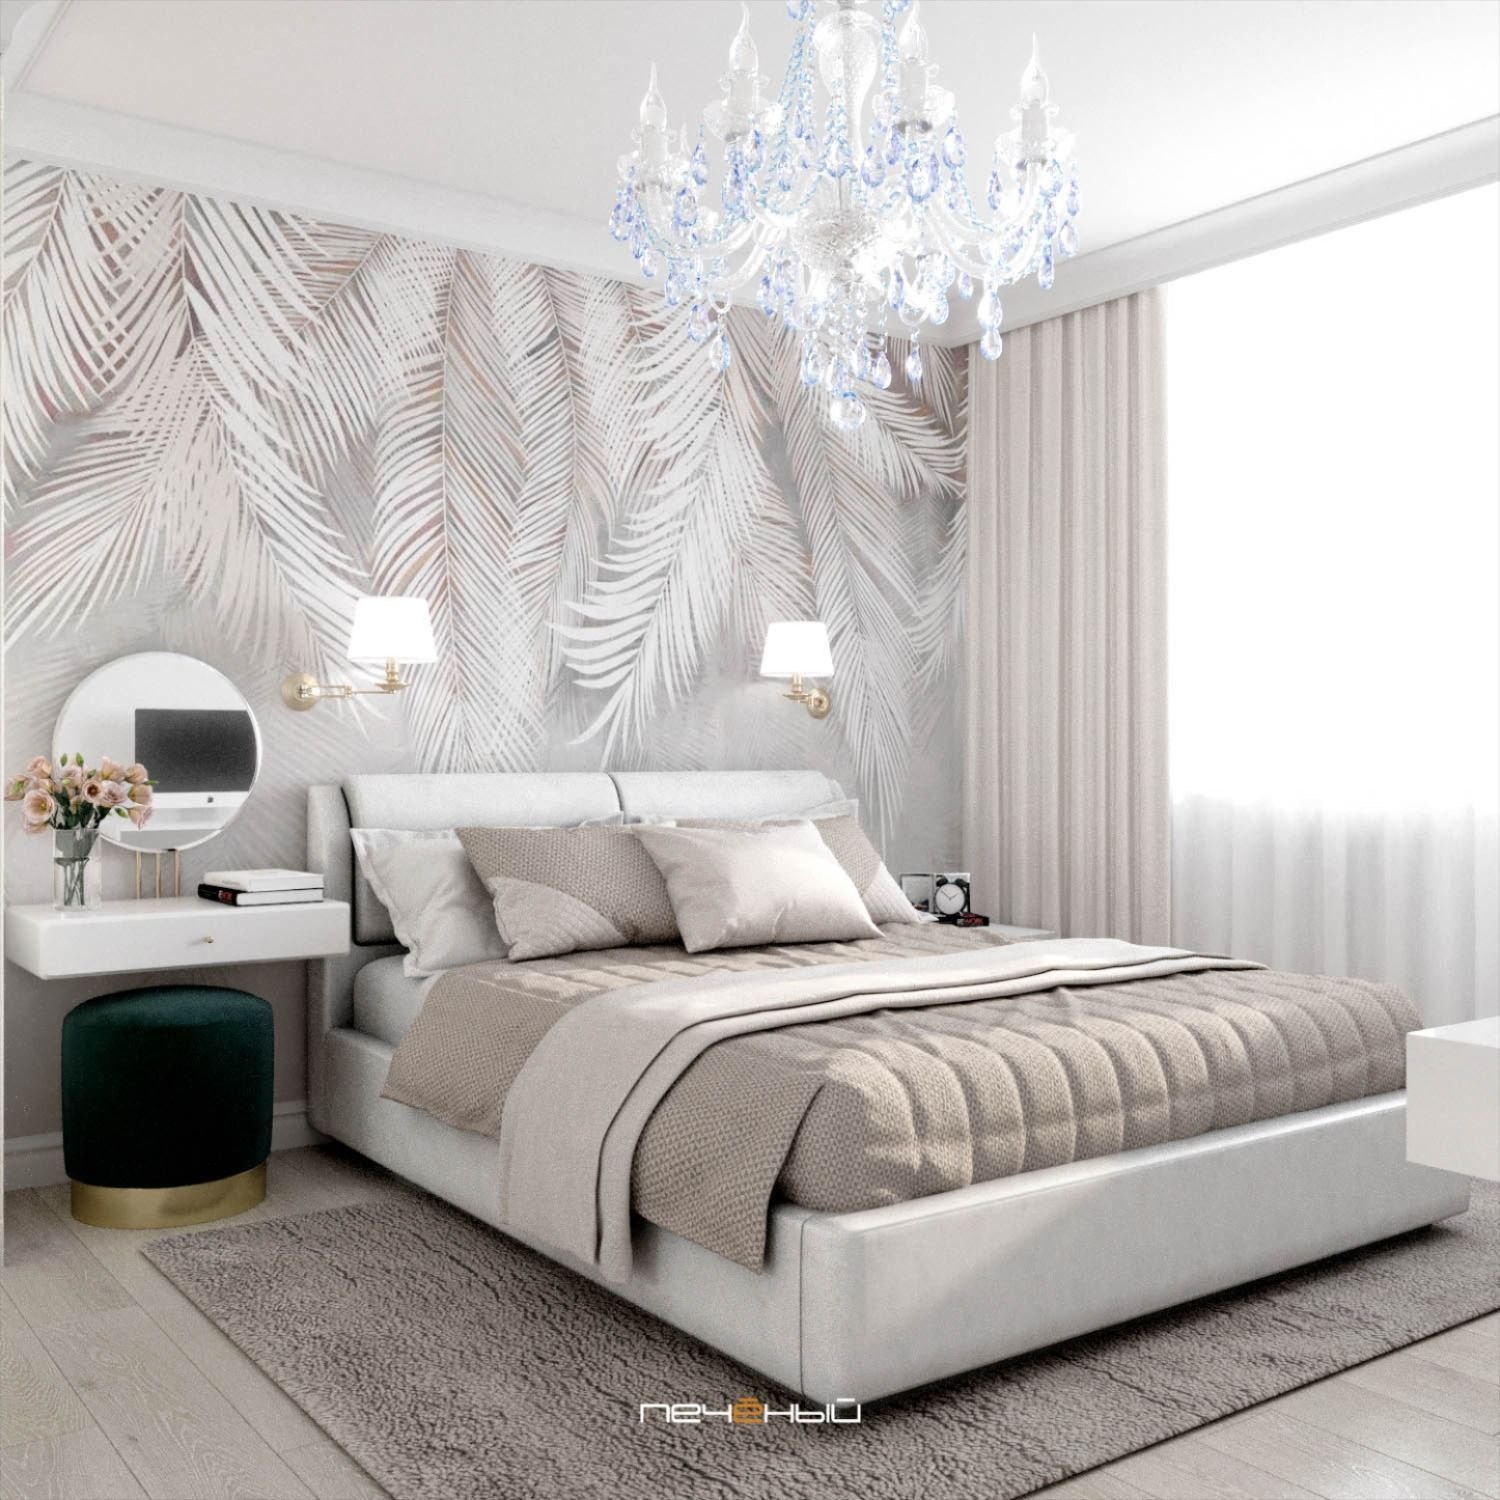 фото светлой современной спальни в квартире